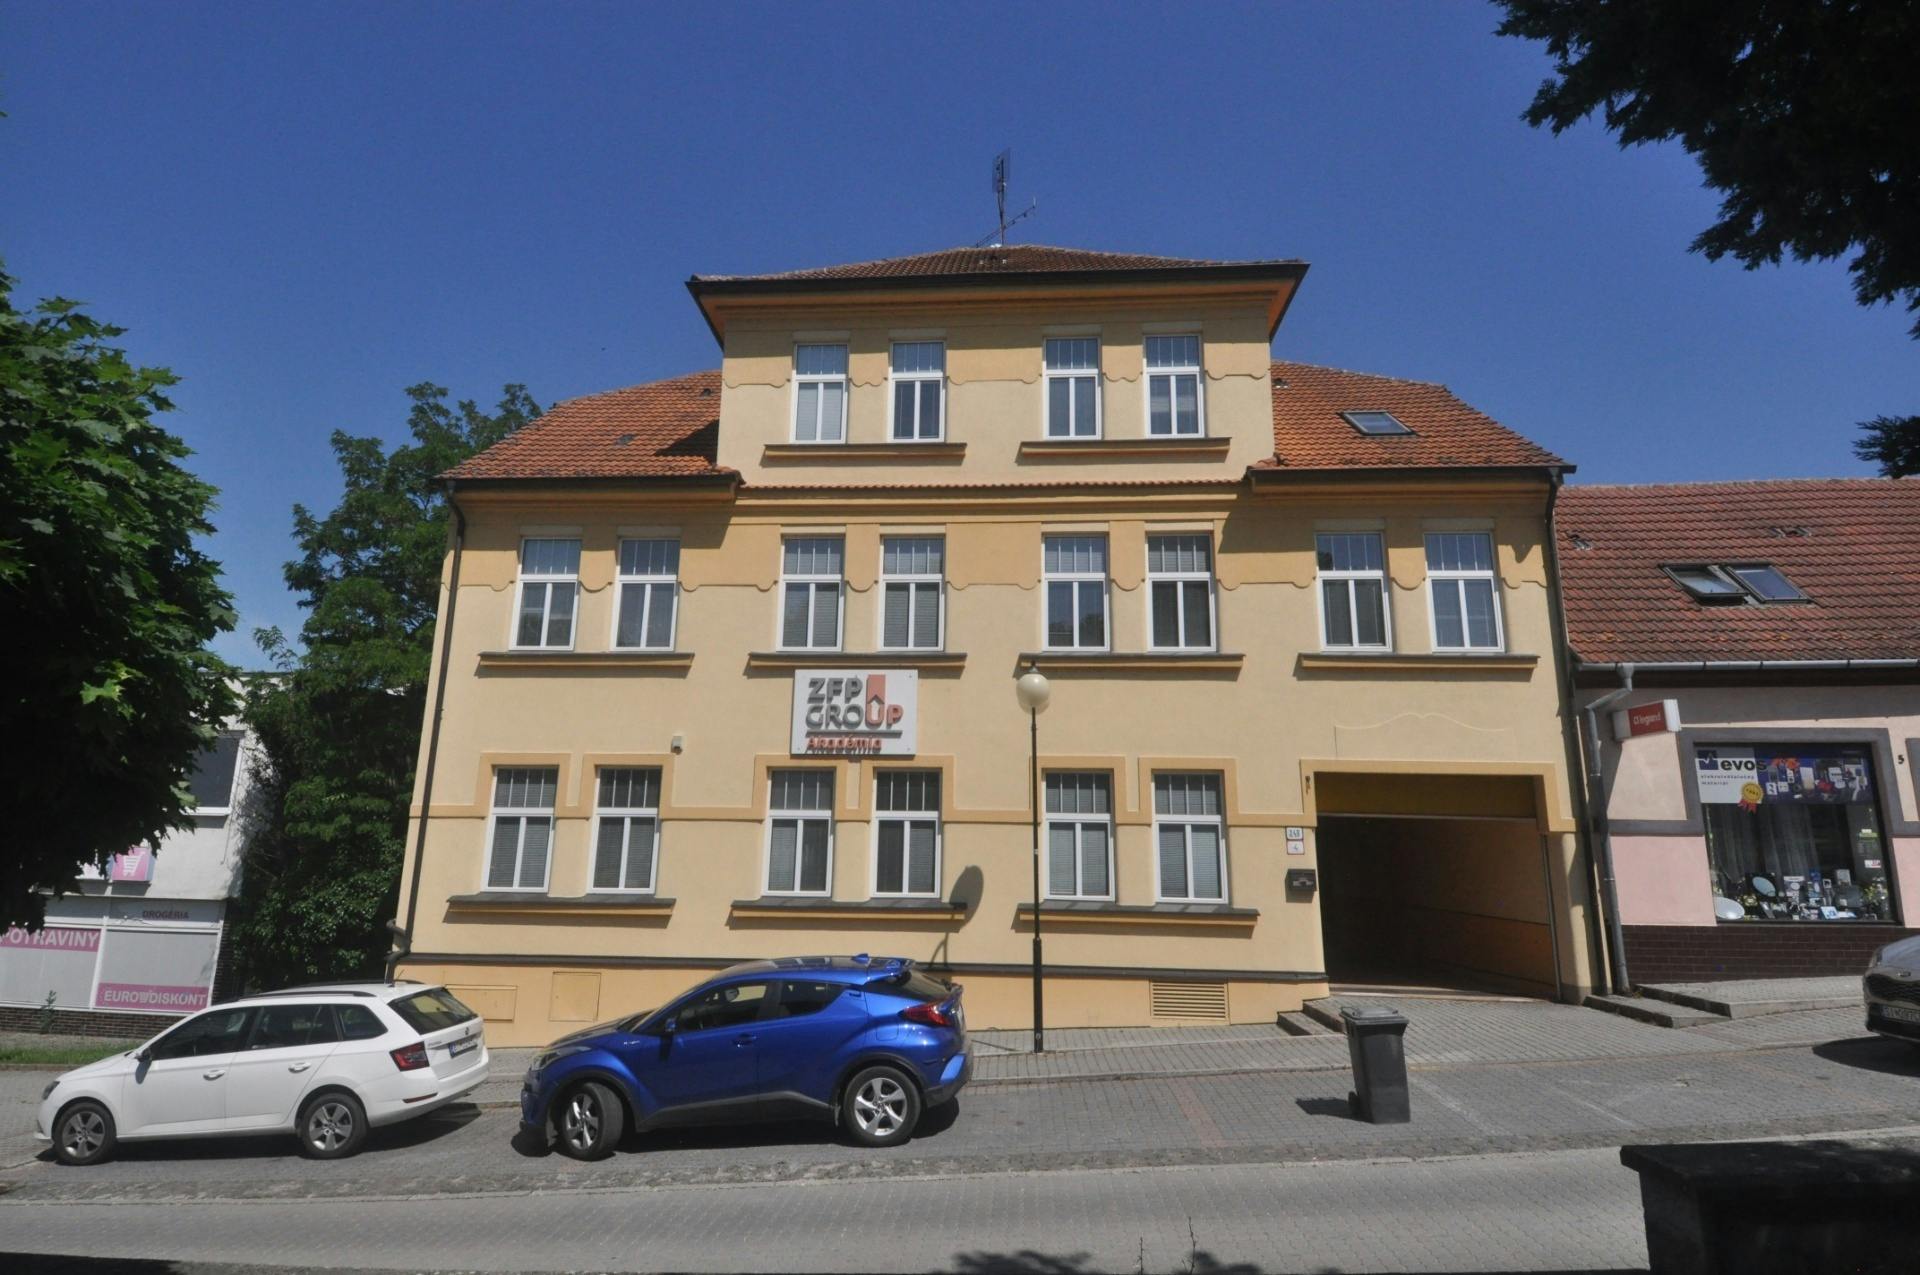 Predaj administratívnej budovy vhodnej na sídlo firmy- Holíč/ Office building for sale suitable for HQ- Holíč